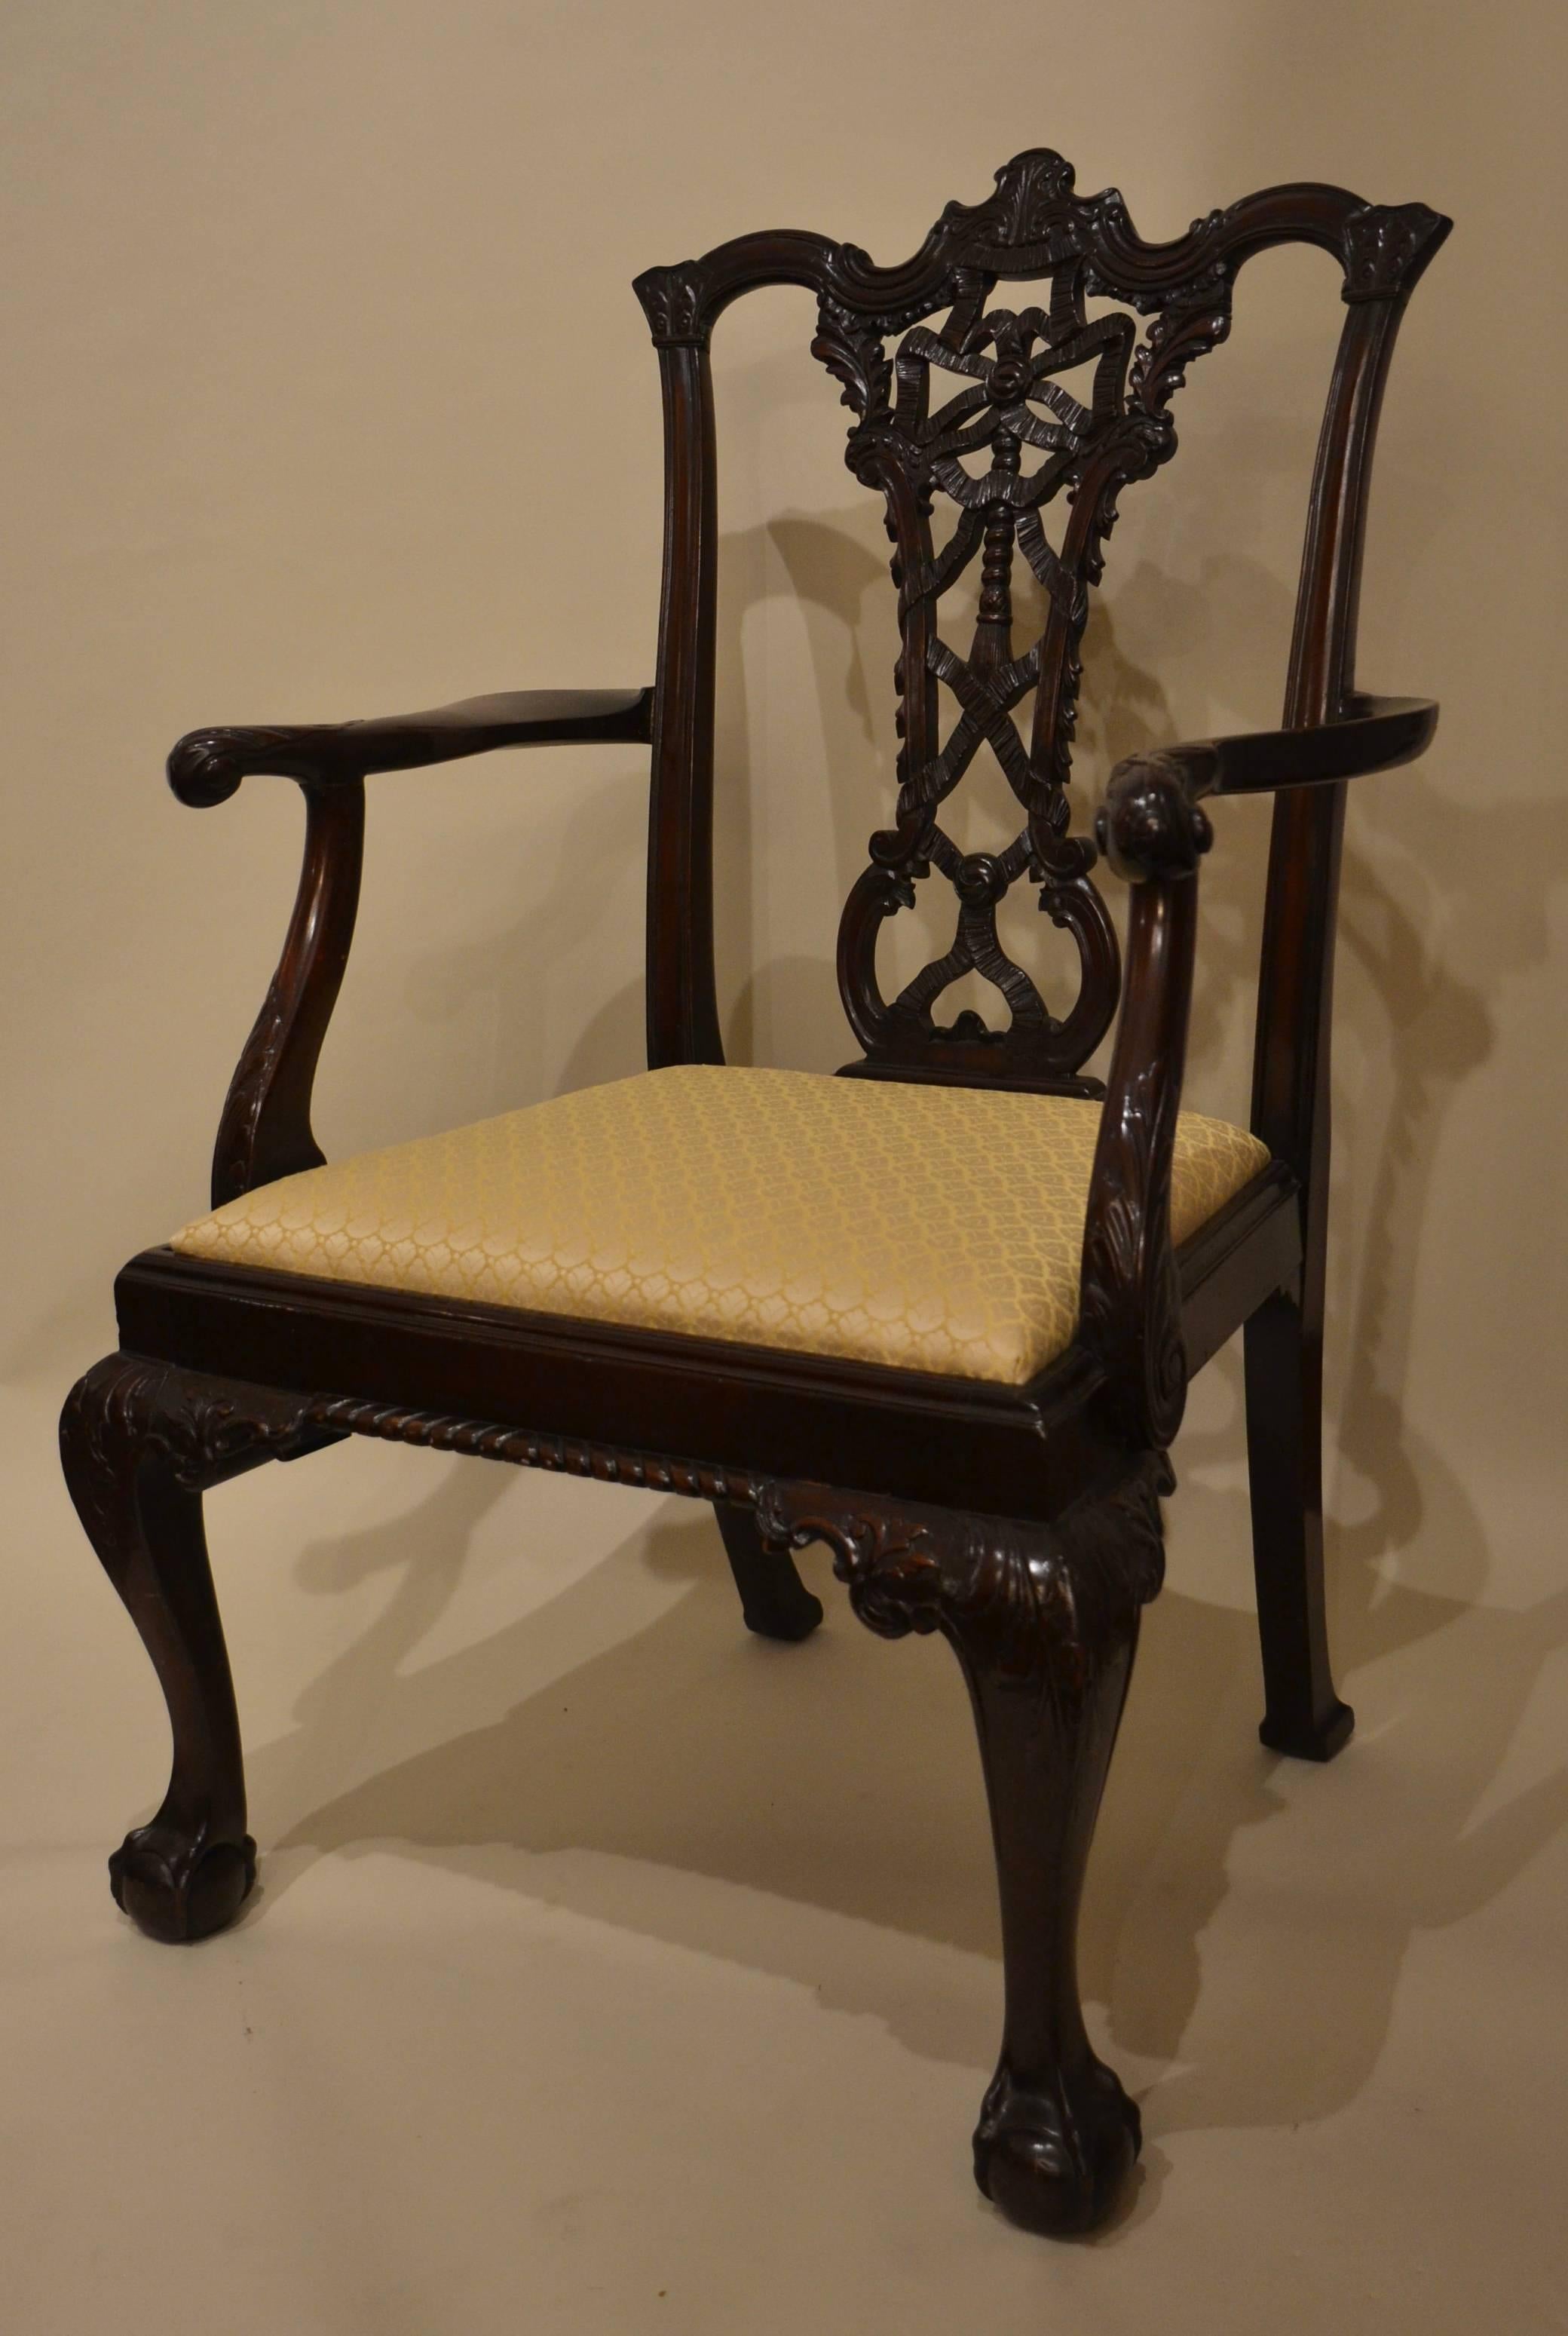 Satz von acht antiken Mahagonistühlen aus dem 19. Jahrhundert.
Dieses Set besteht aus 6 Beistellstühlen und 2 Sesseln. Bitte sehen Sie sich die detaillierten Bilder für weitere Informationen an.